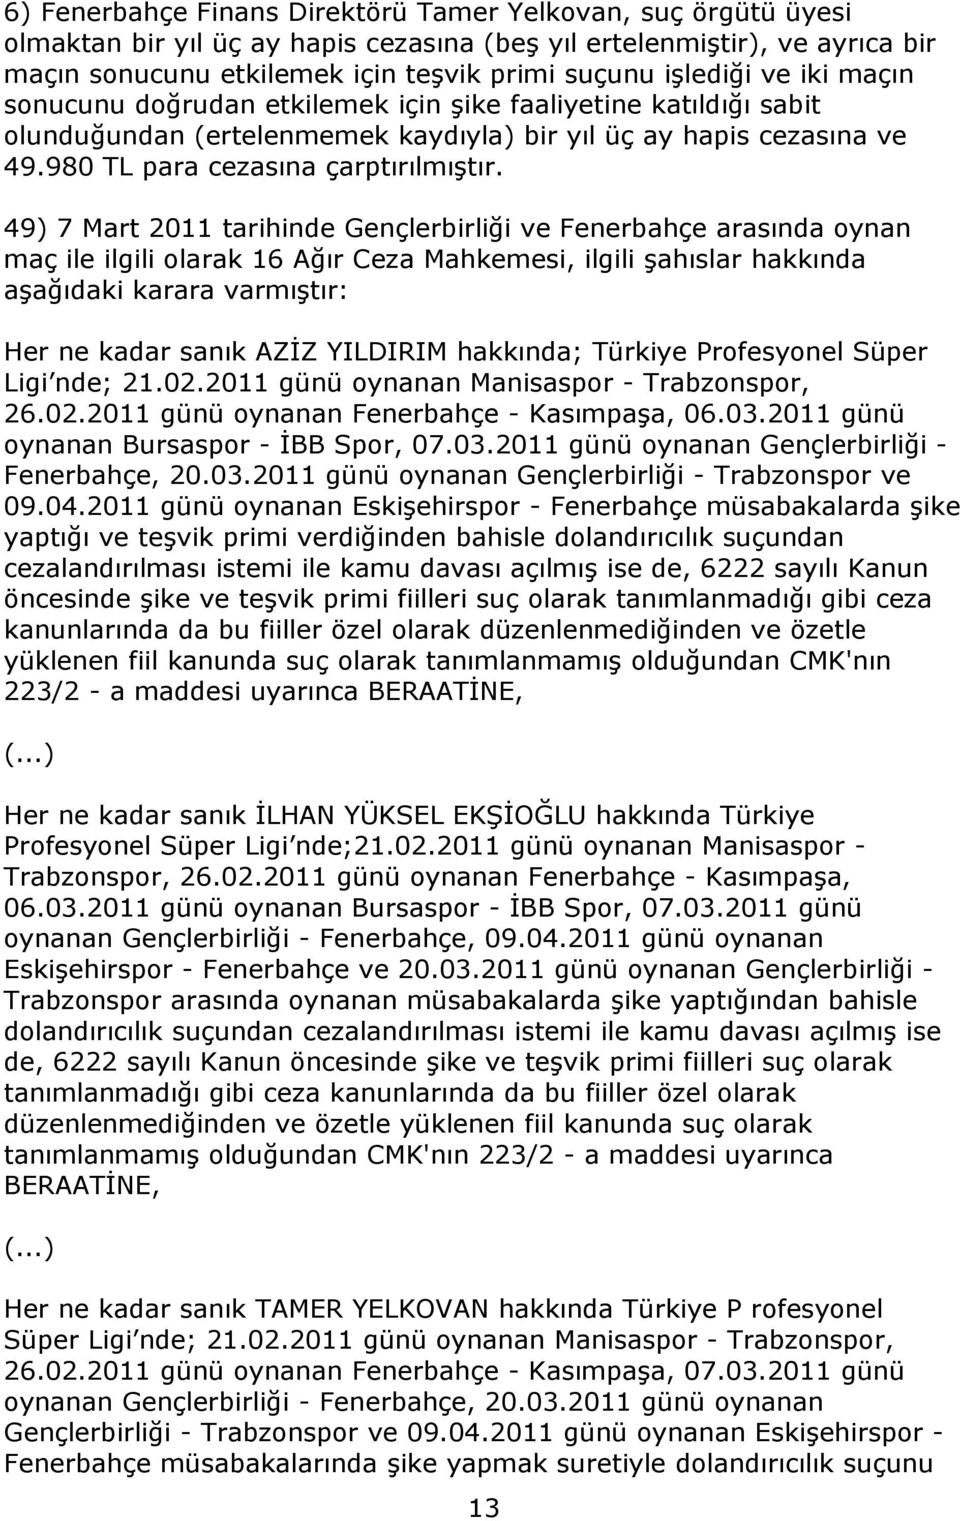 49) 7 Mart 2011 tarihinde Gençlerbirliği ve Fenerbahçe arasında oynan maç ile ilgili olarak 16 Ağır Ceza Mahkemesi, ilgili şahıslar hakkında aşağıdaki karara varmıştır: Her ne kadar sanık AZİZ